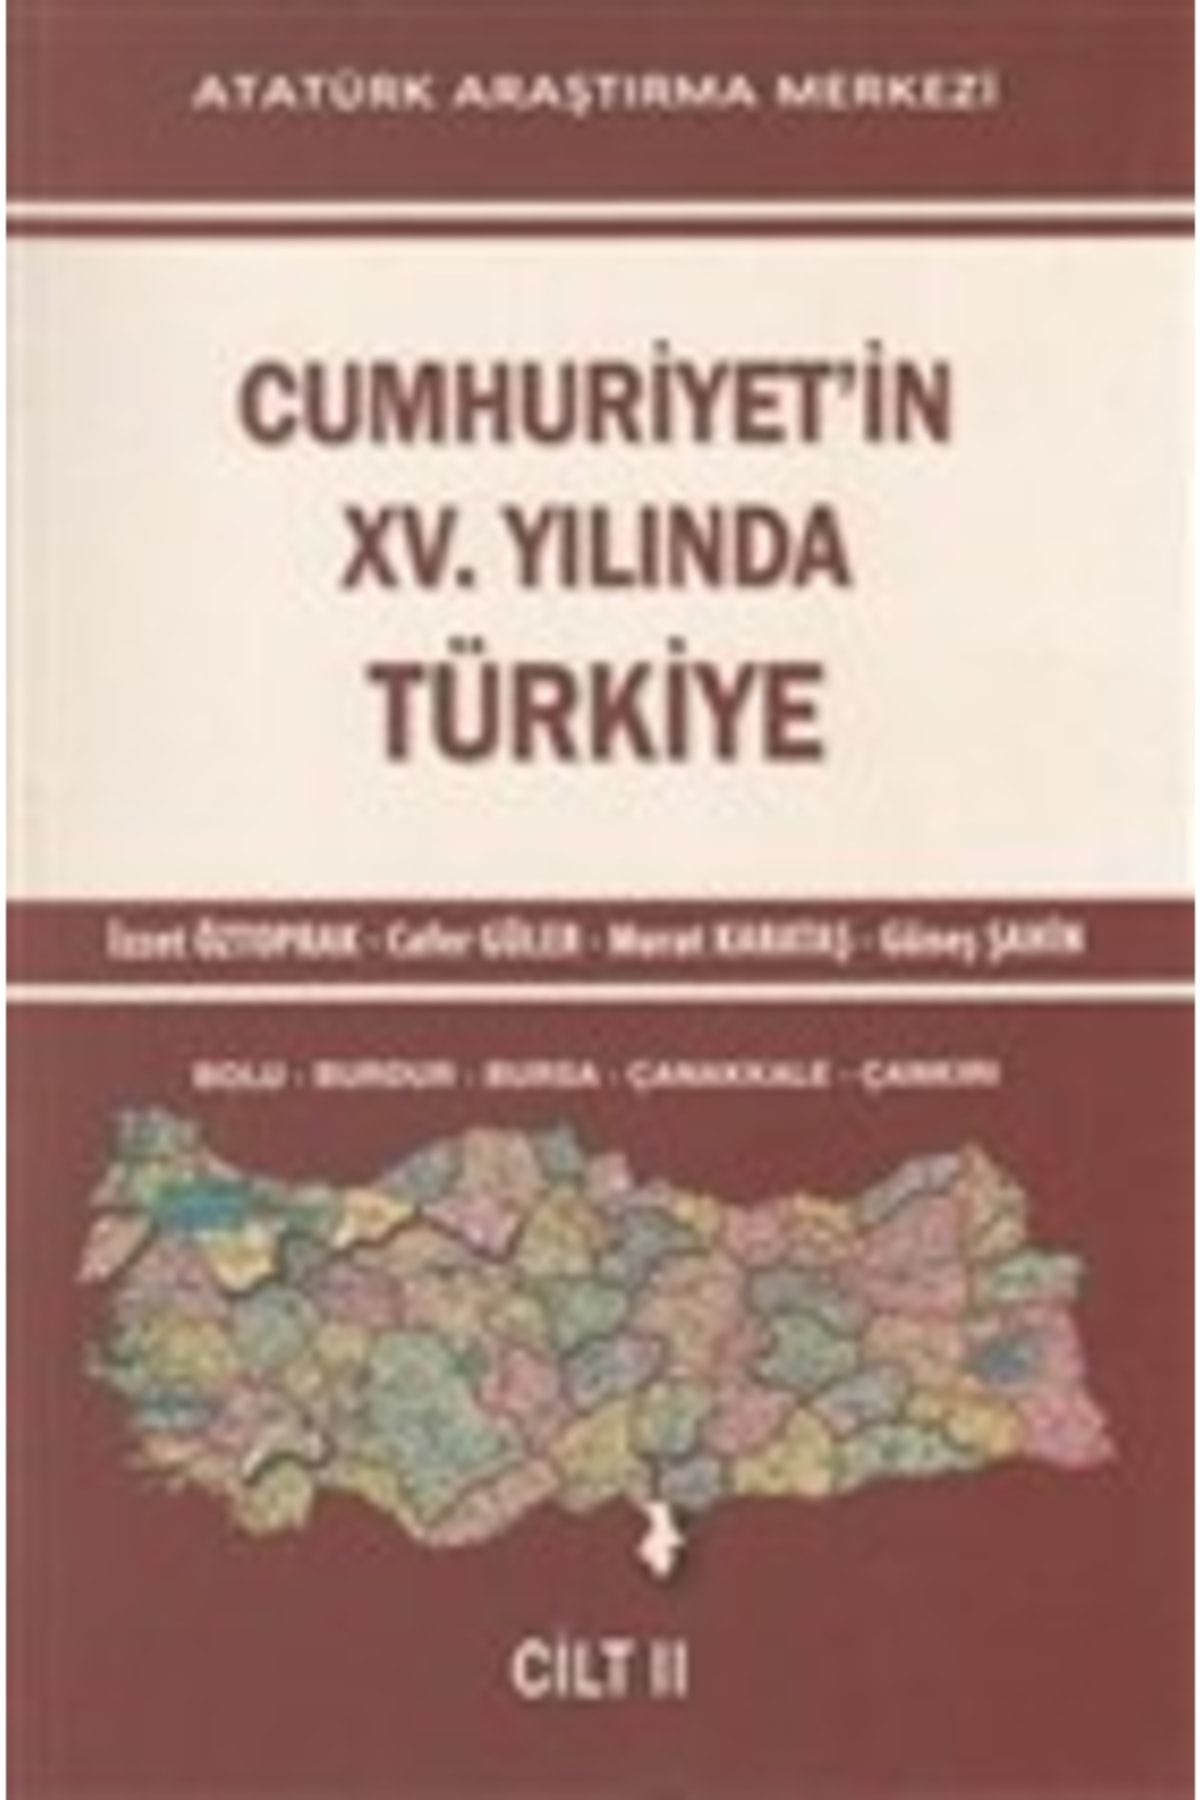 Atatürk Araştırma Merkezi Cumhuriyet'in 15. Yılında Türkiye Cilt: 2